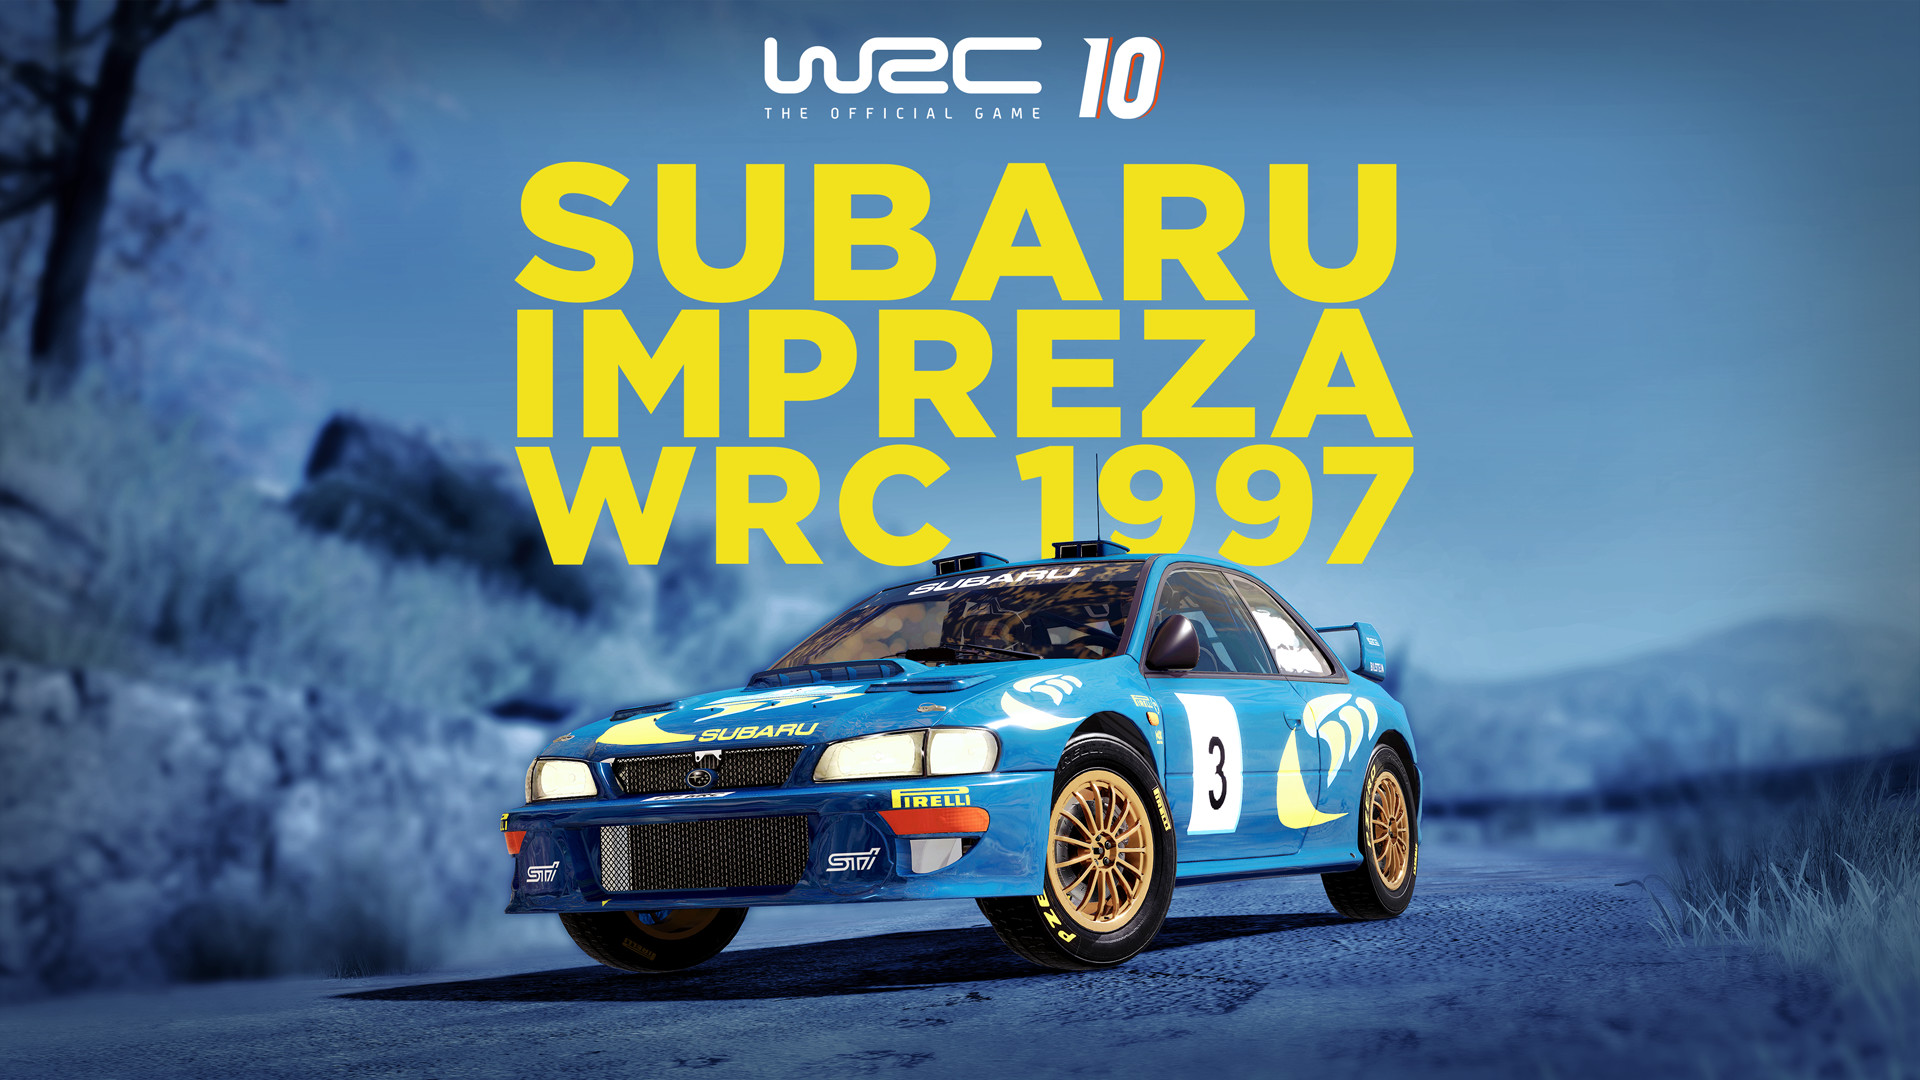 WRC 10 - Subaru Impreza WRC 1997 DLC Steam CD Key 3.33 $